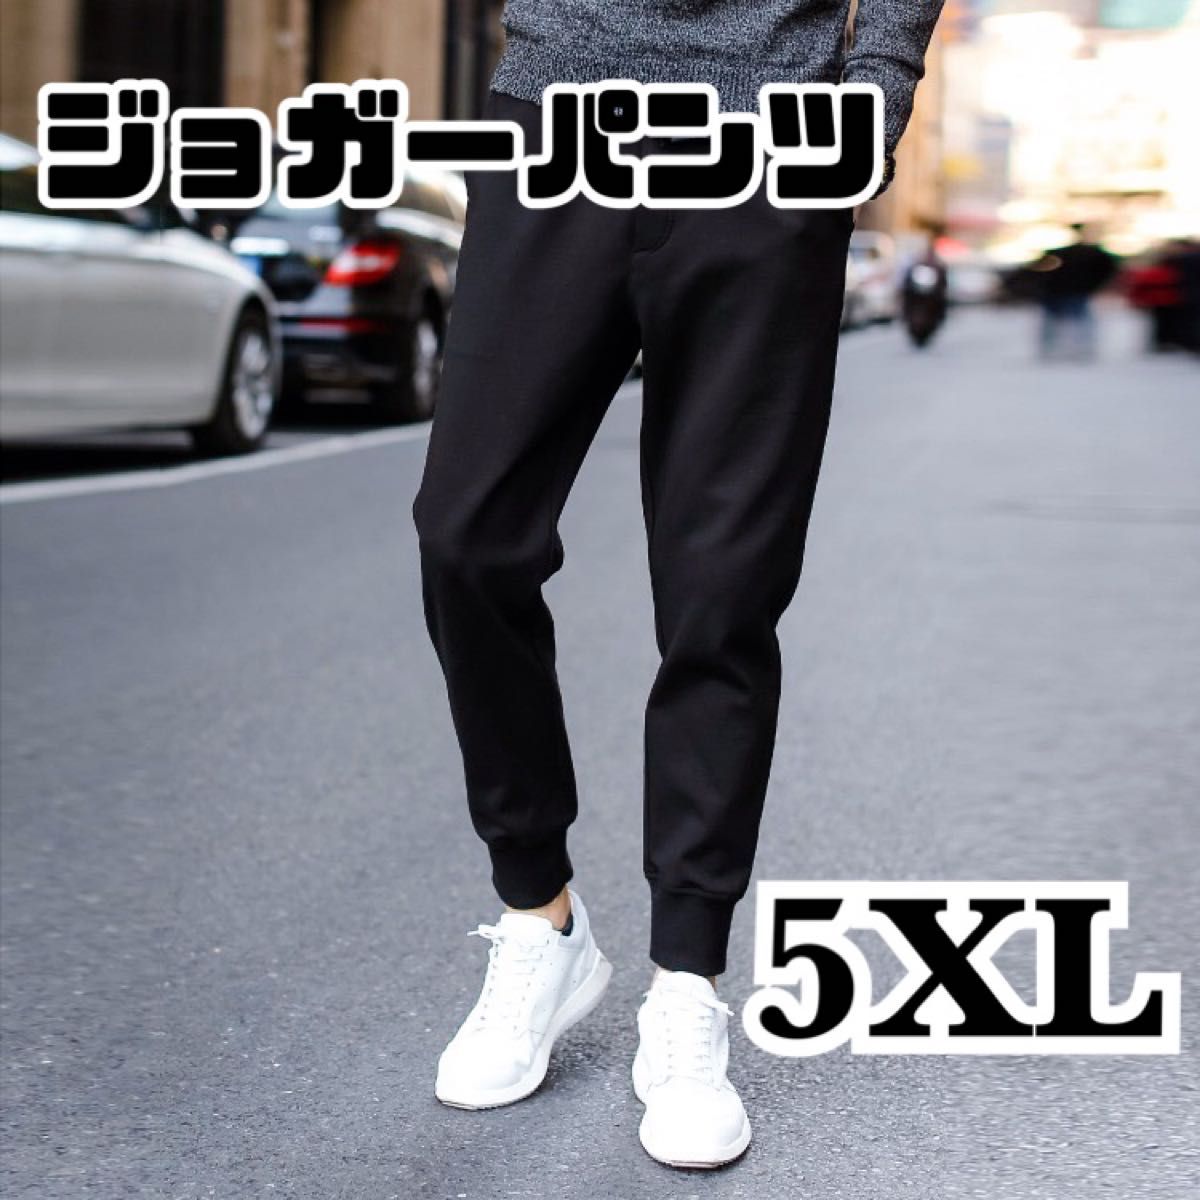 ジョガーパンツ 5XL ジャージ 黒 ブラック 男女兼用 パンツ ジム ルームウェア ダンス スポーツ ランニング